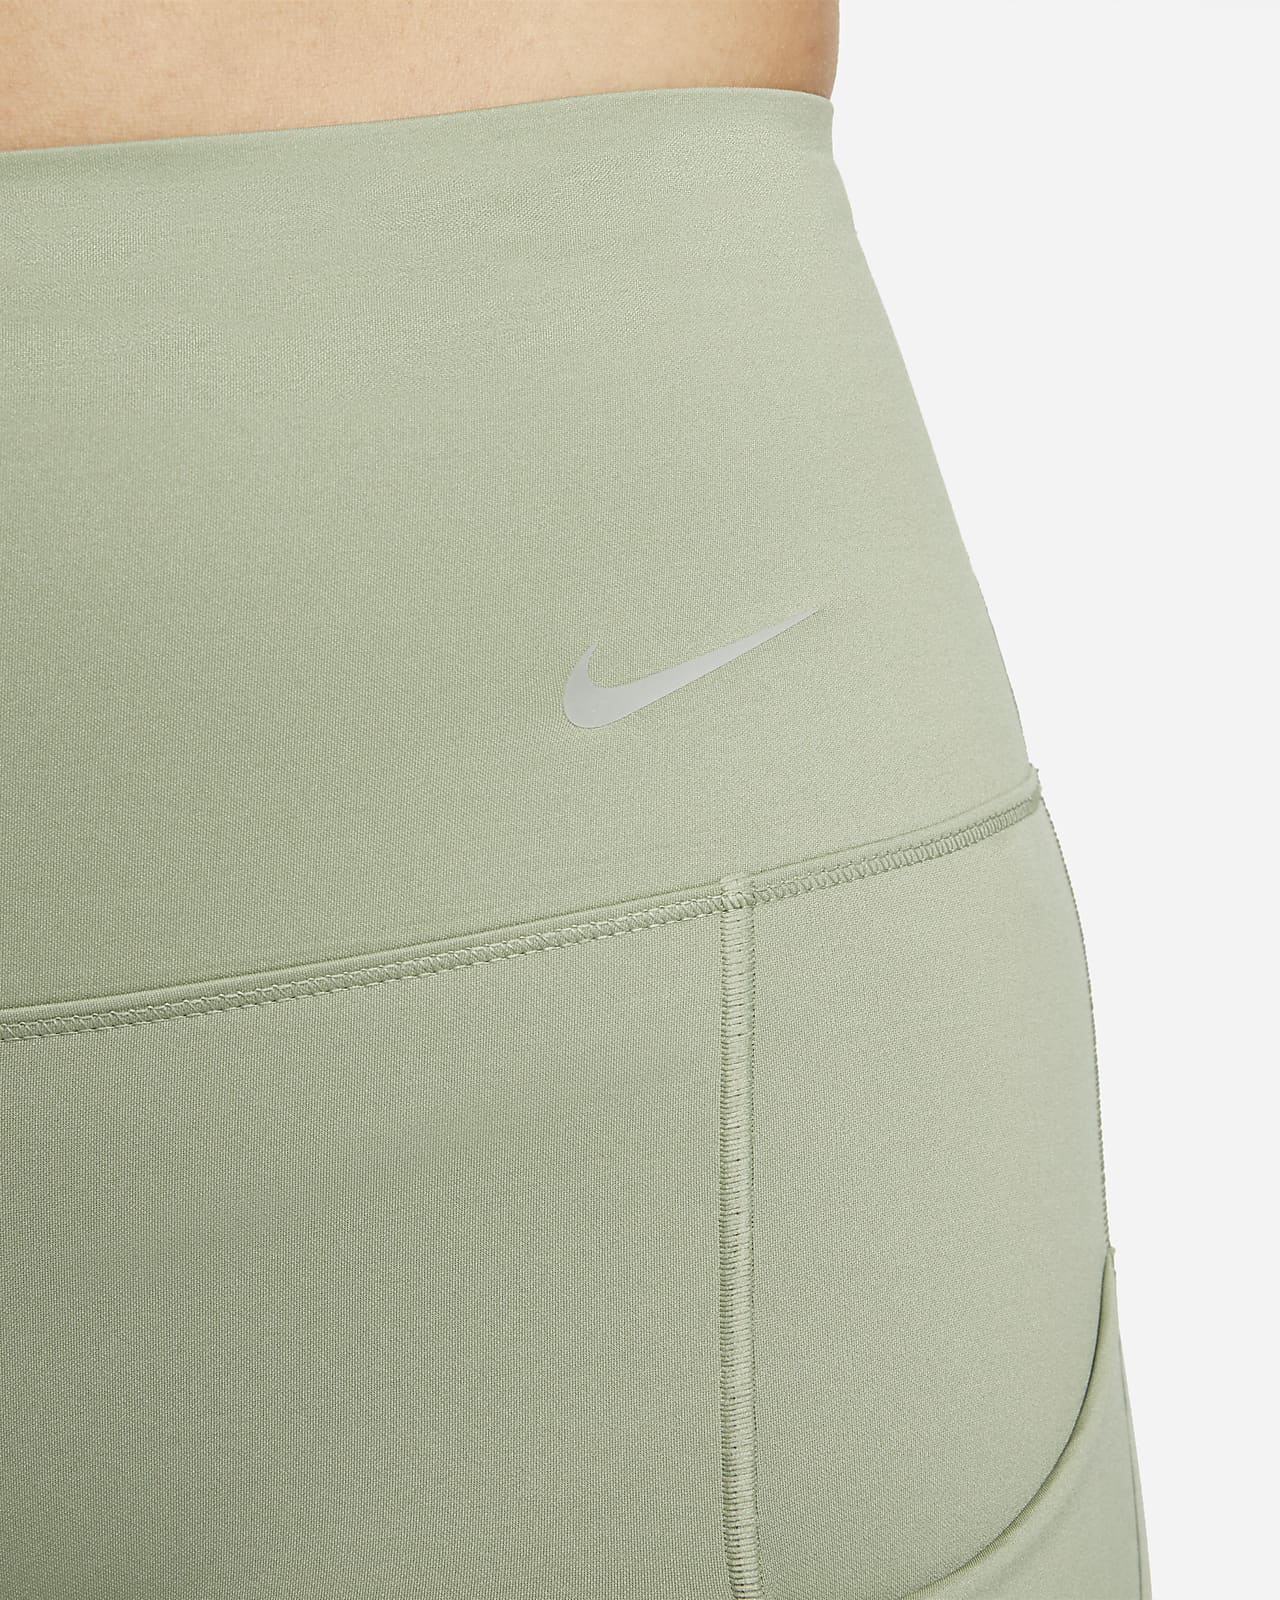 Nike one leggings 7/8 allenamento - Odolmo calzature - Pieve di soligo